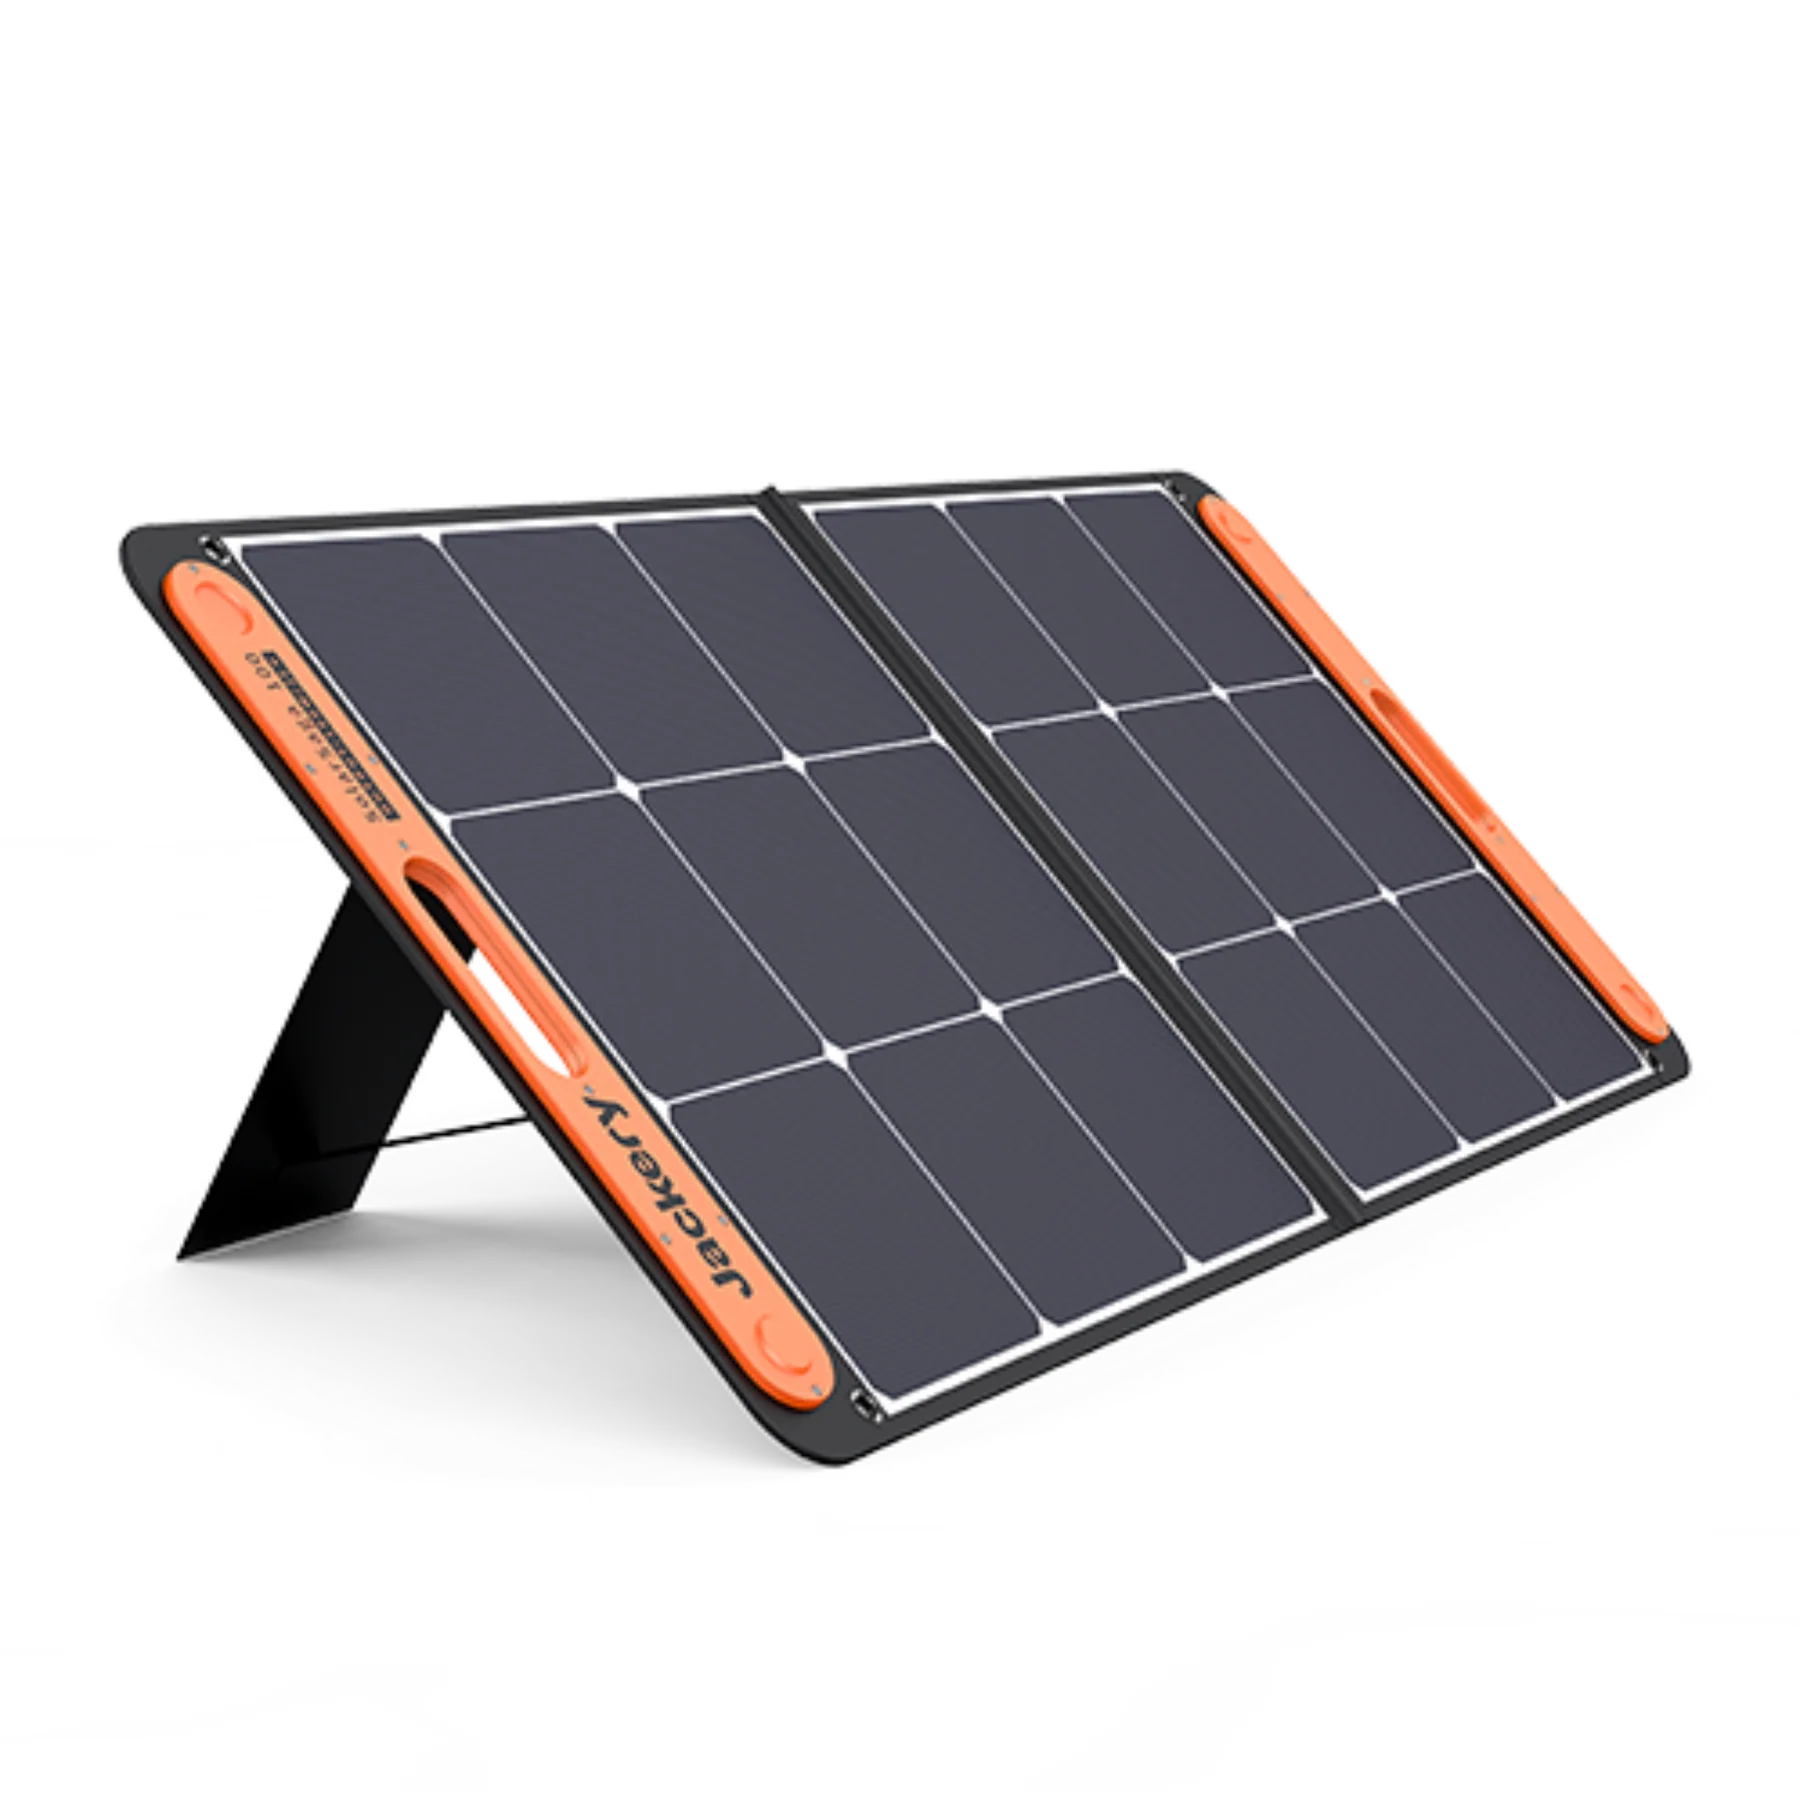 Jackery SolarSaga 100W太陽能板- Jackery MO